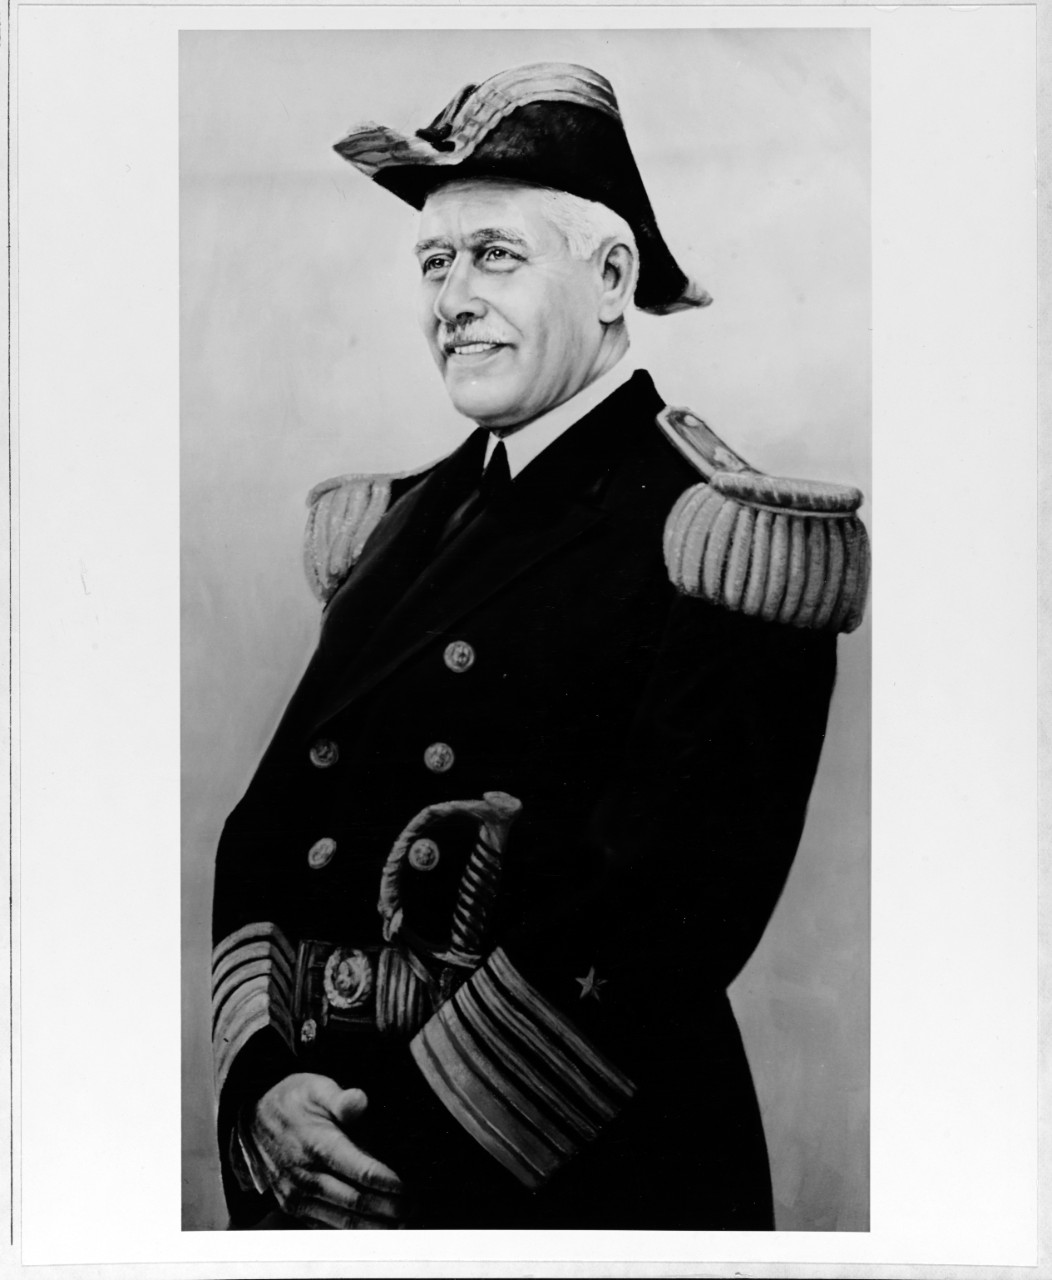 Admiral William V. Pratt, USN